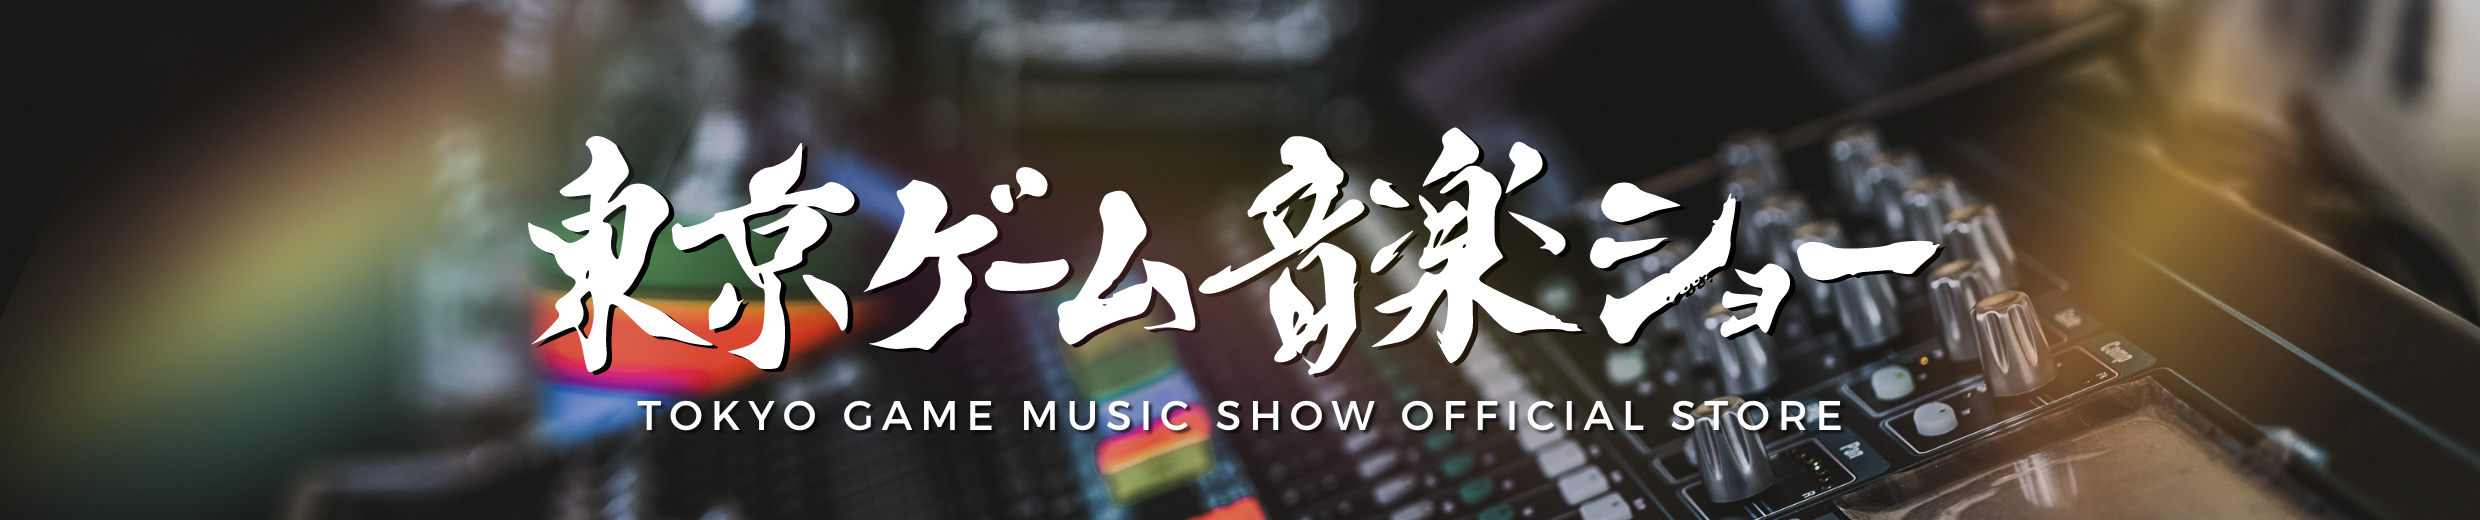 東京ゲーム音楽ショー第10回開催記念公式ショップ